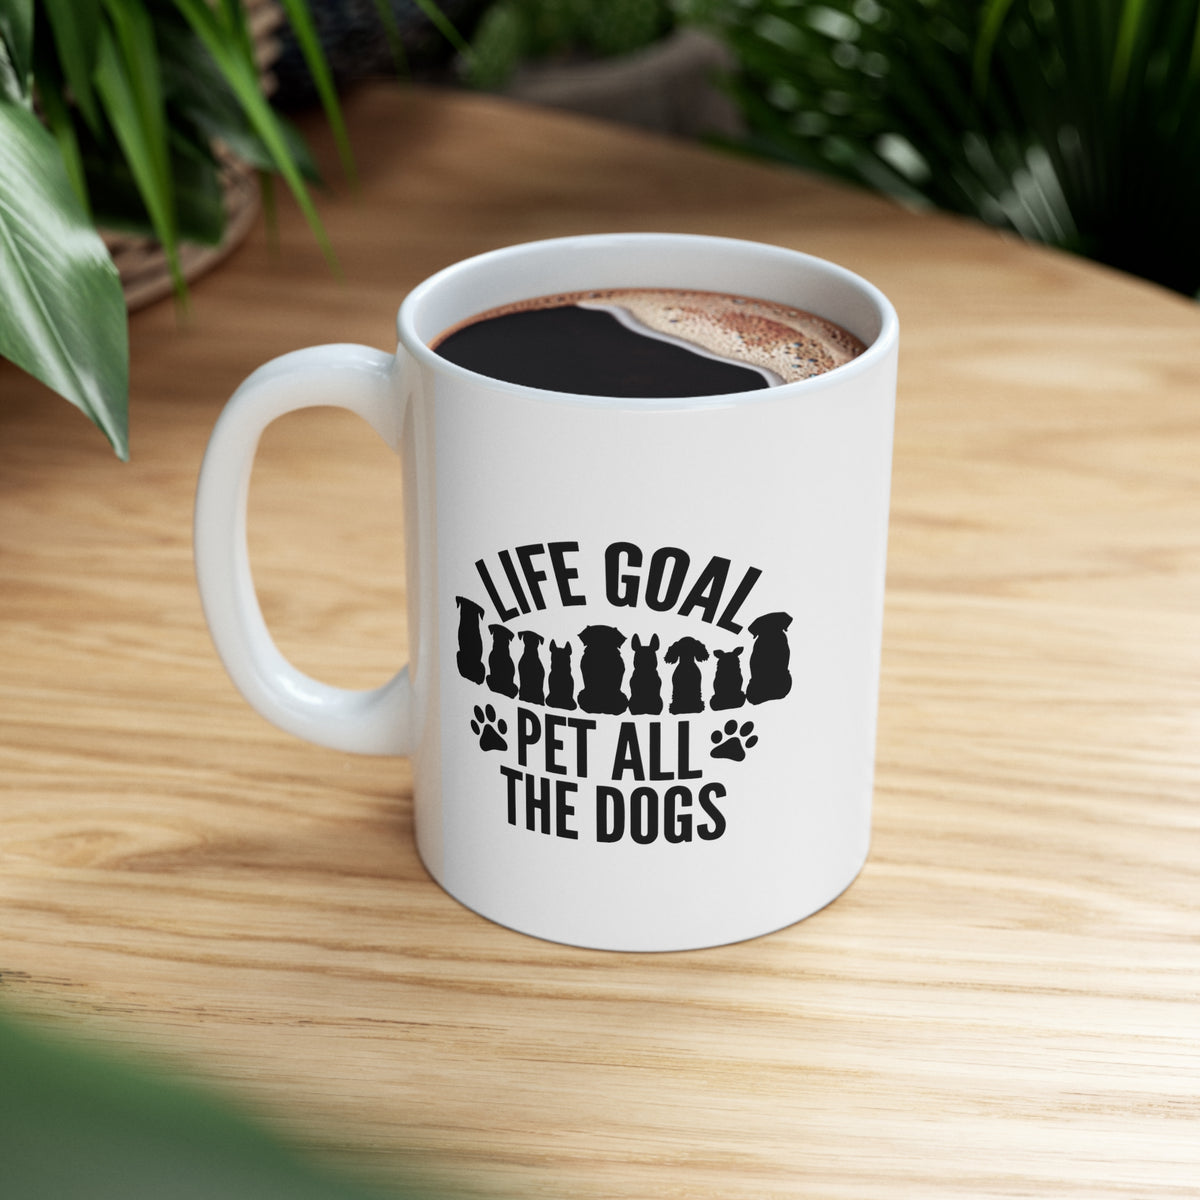 Life Goal, Pet All The Dogs - Ceramic Mug 11oz